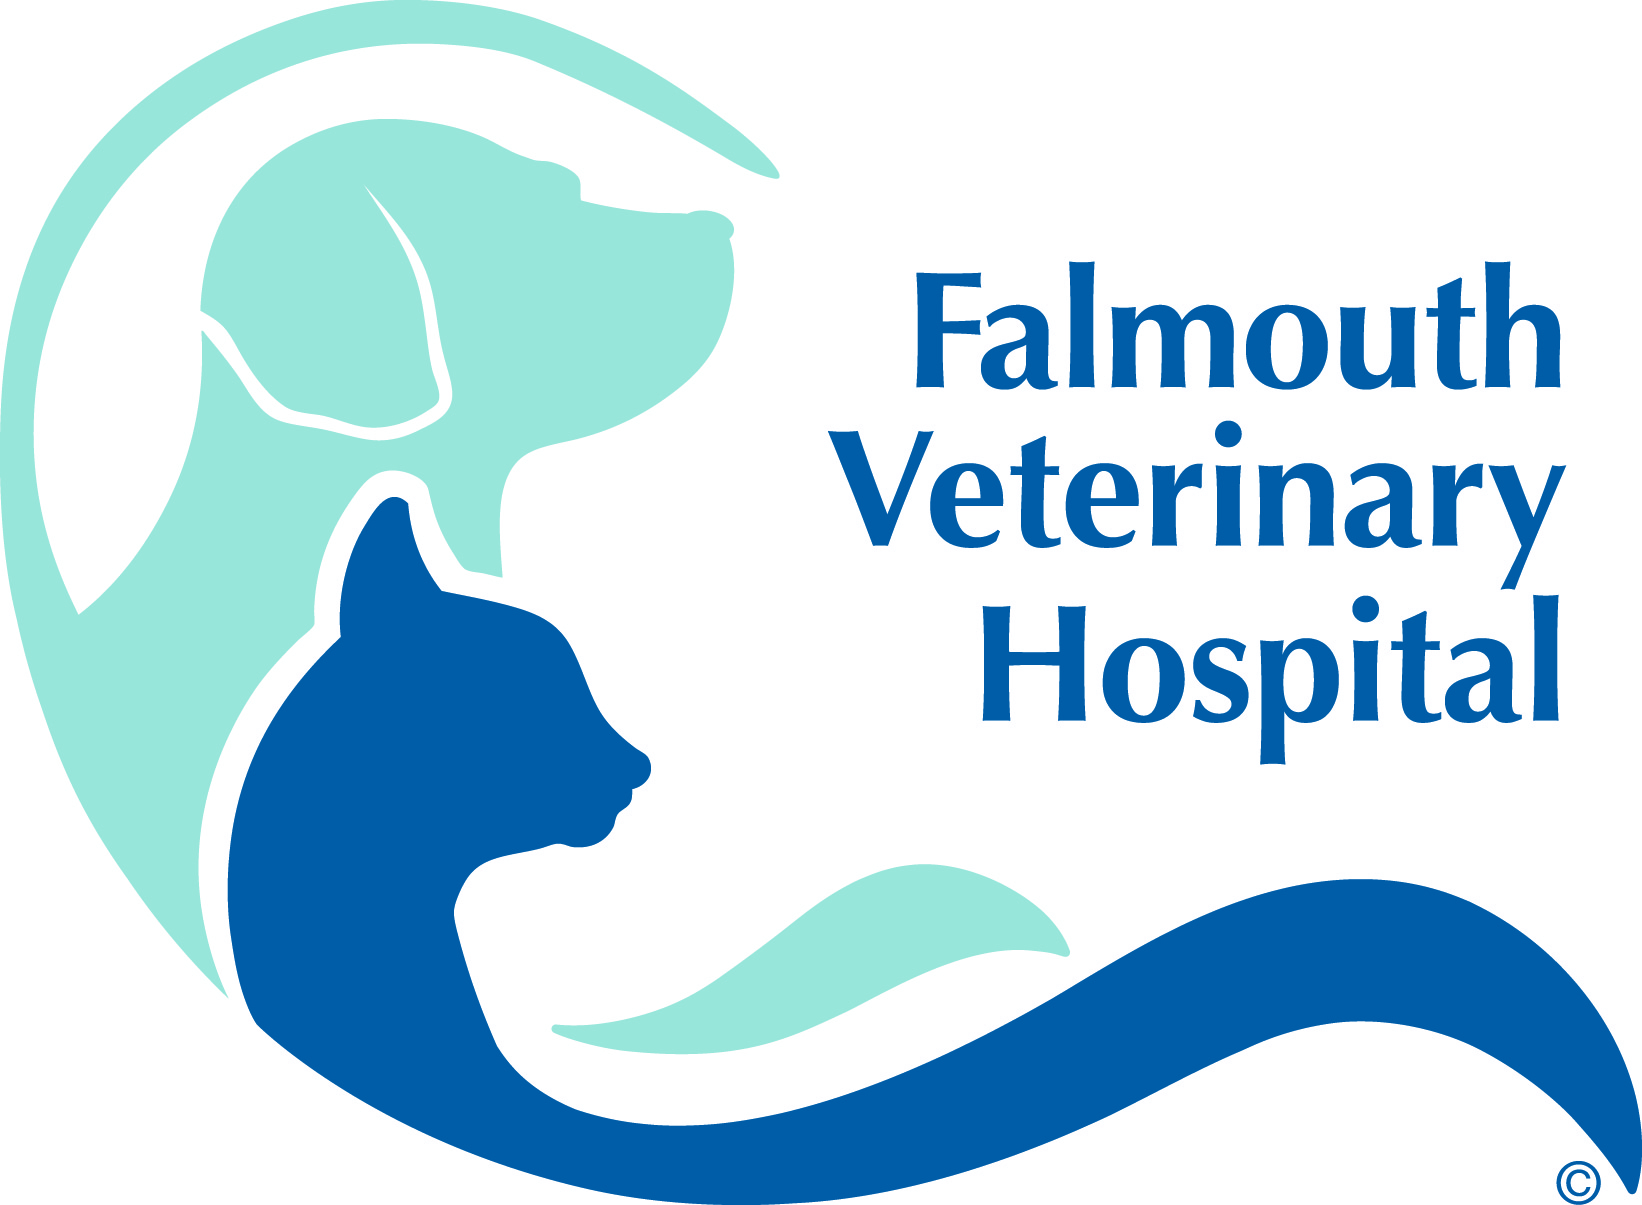 Falmouth Veterinary Hospital logo